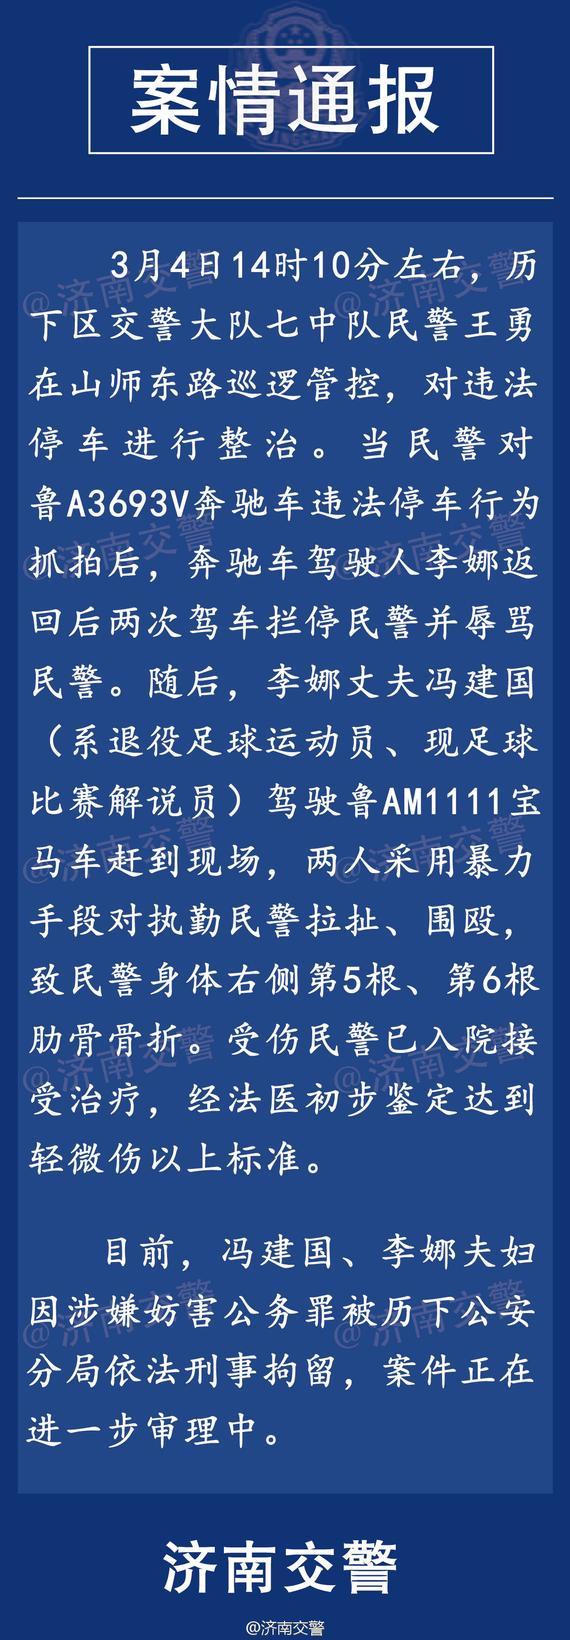 济南市公安局交通警察官方微博公告